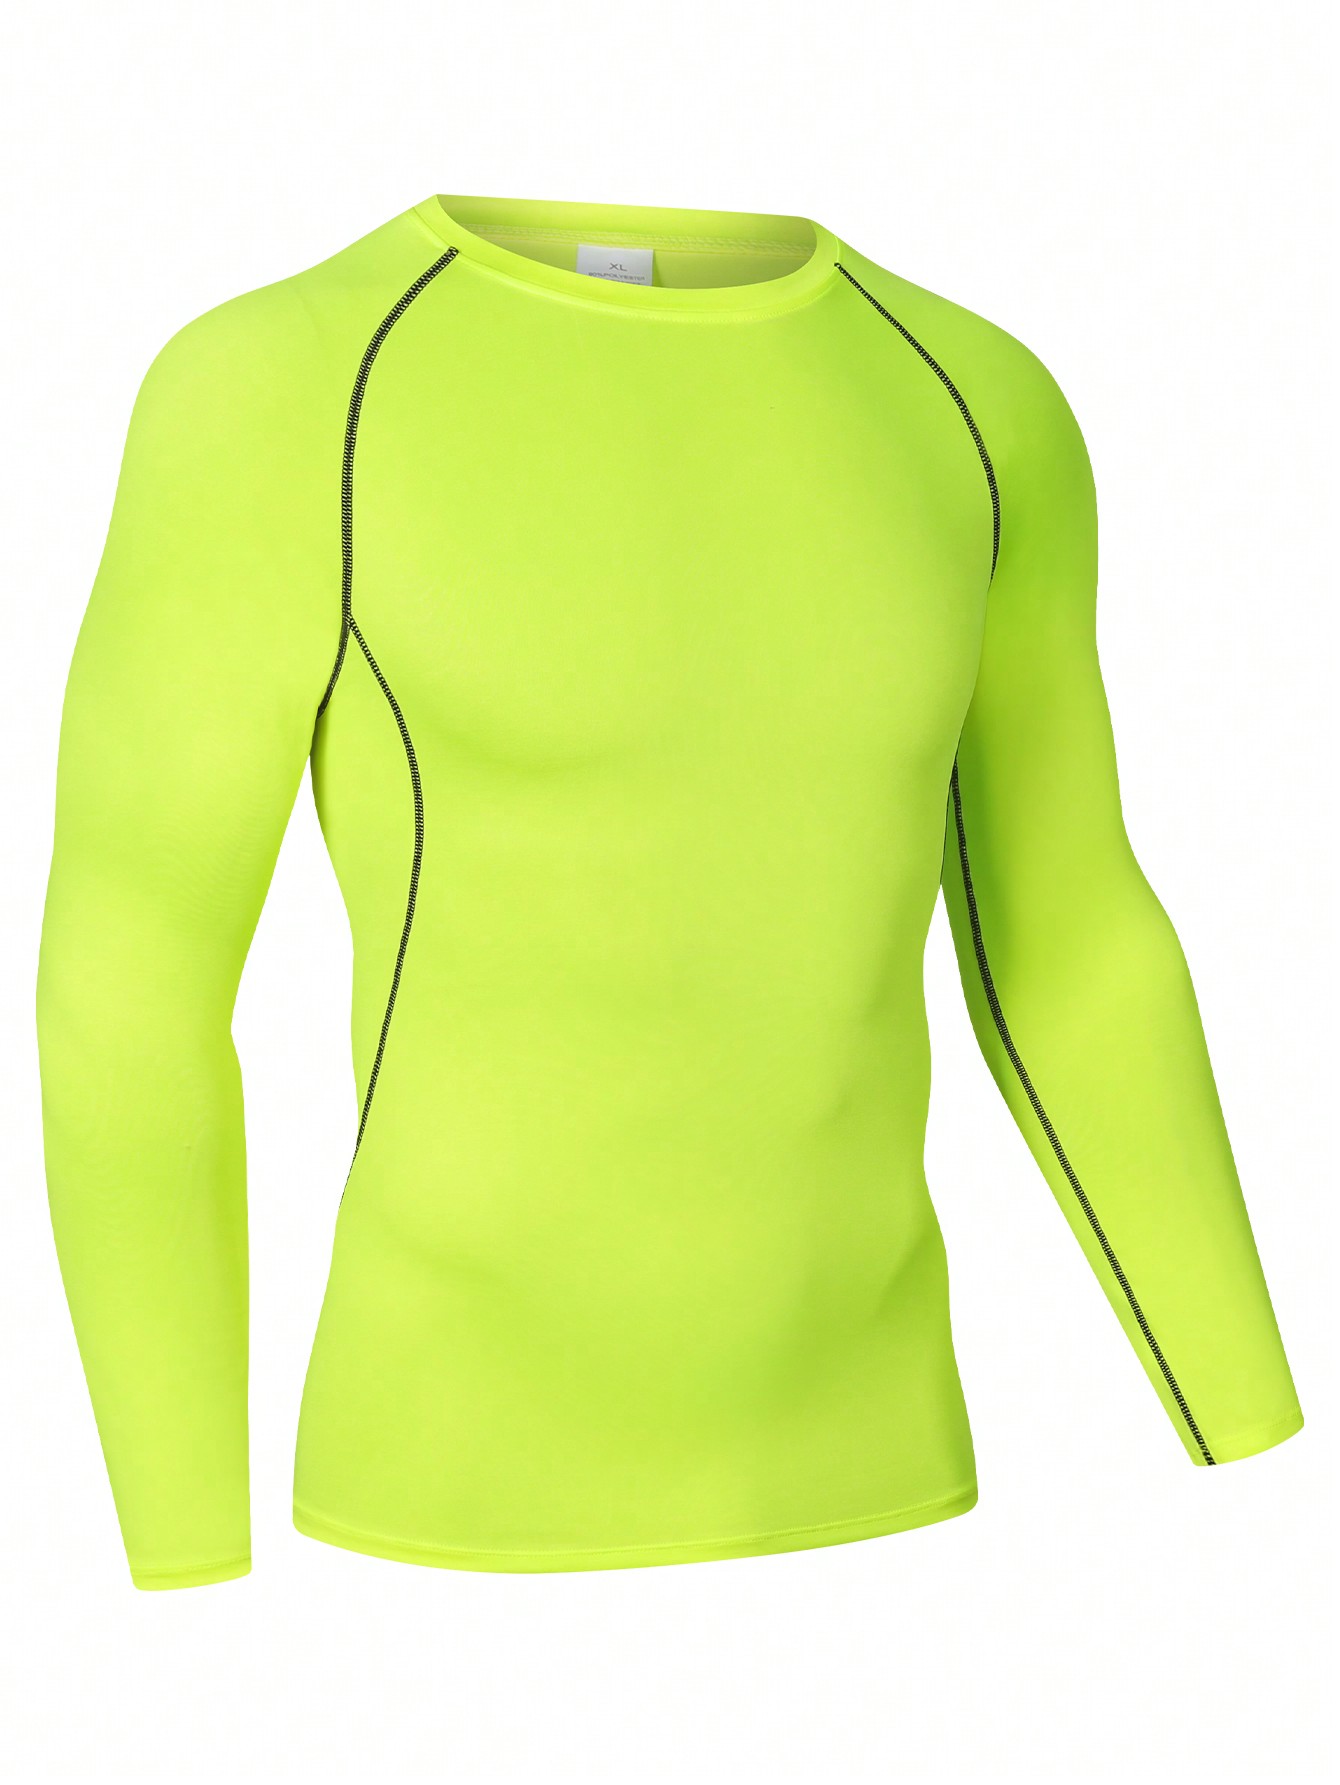 Мужская эластичная компрессионная рубашка для фитнеса с длинными рукавами, зеленый фото